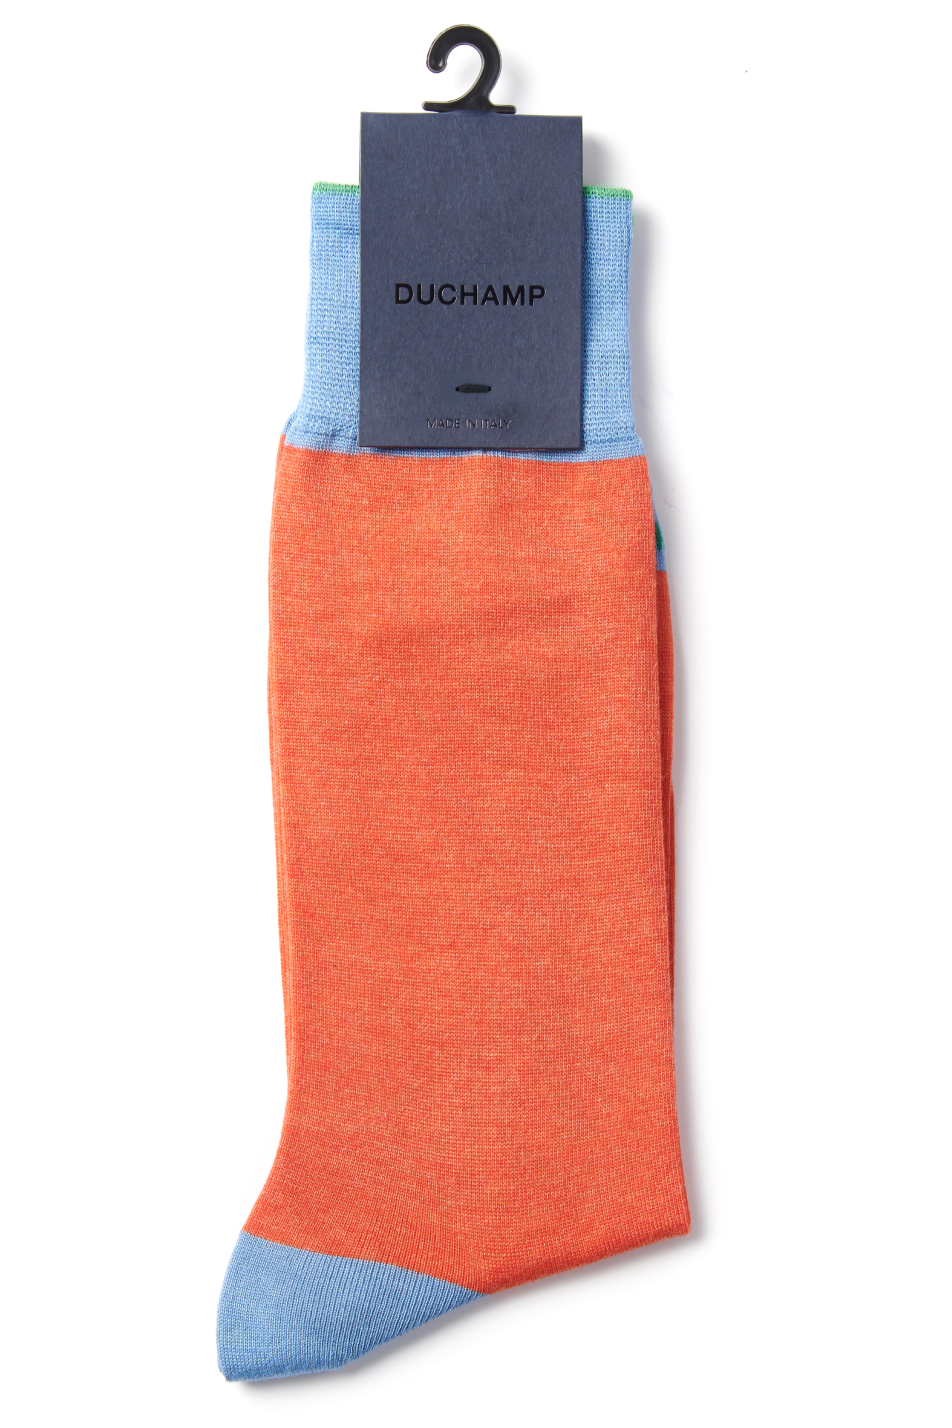 Duchamp Men's Heel Toe Sock